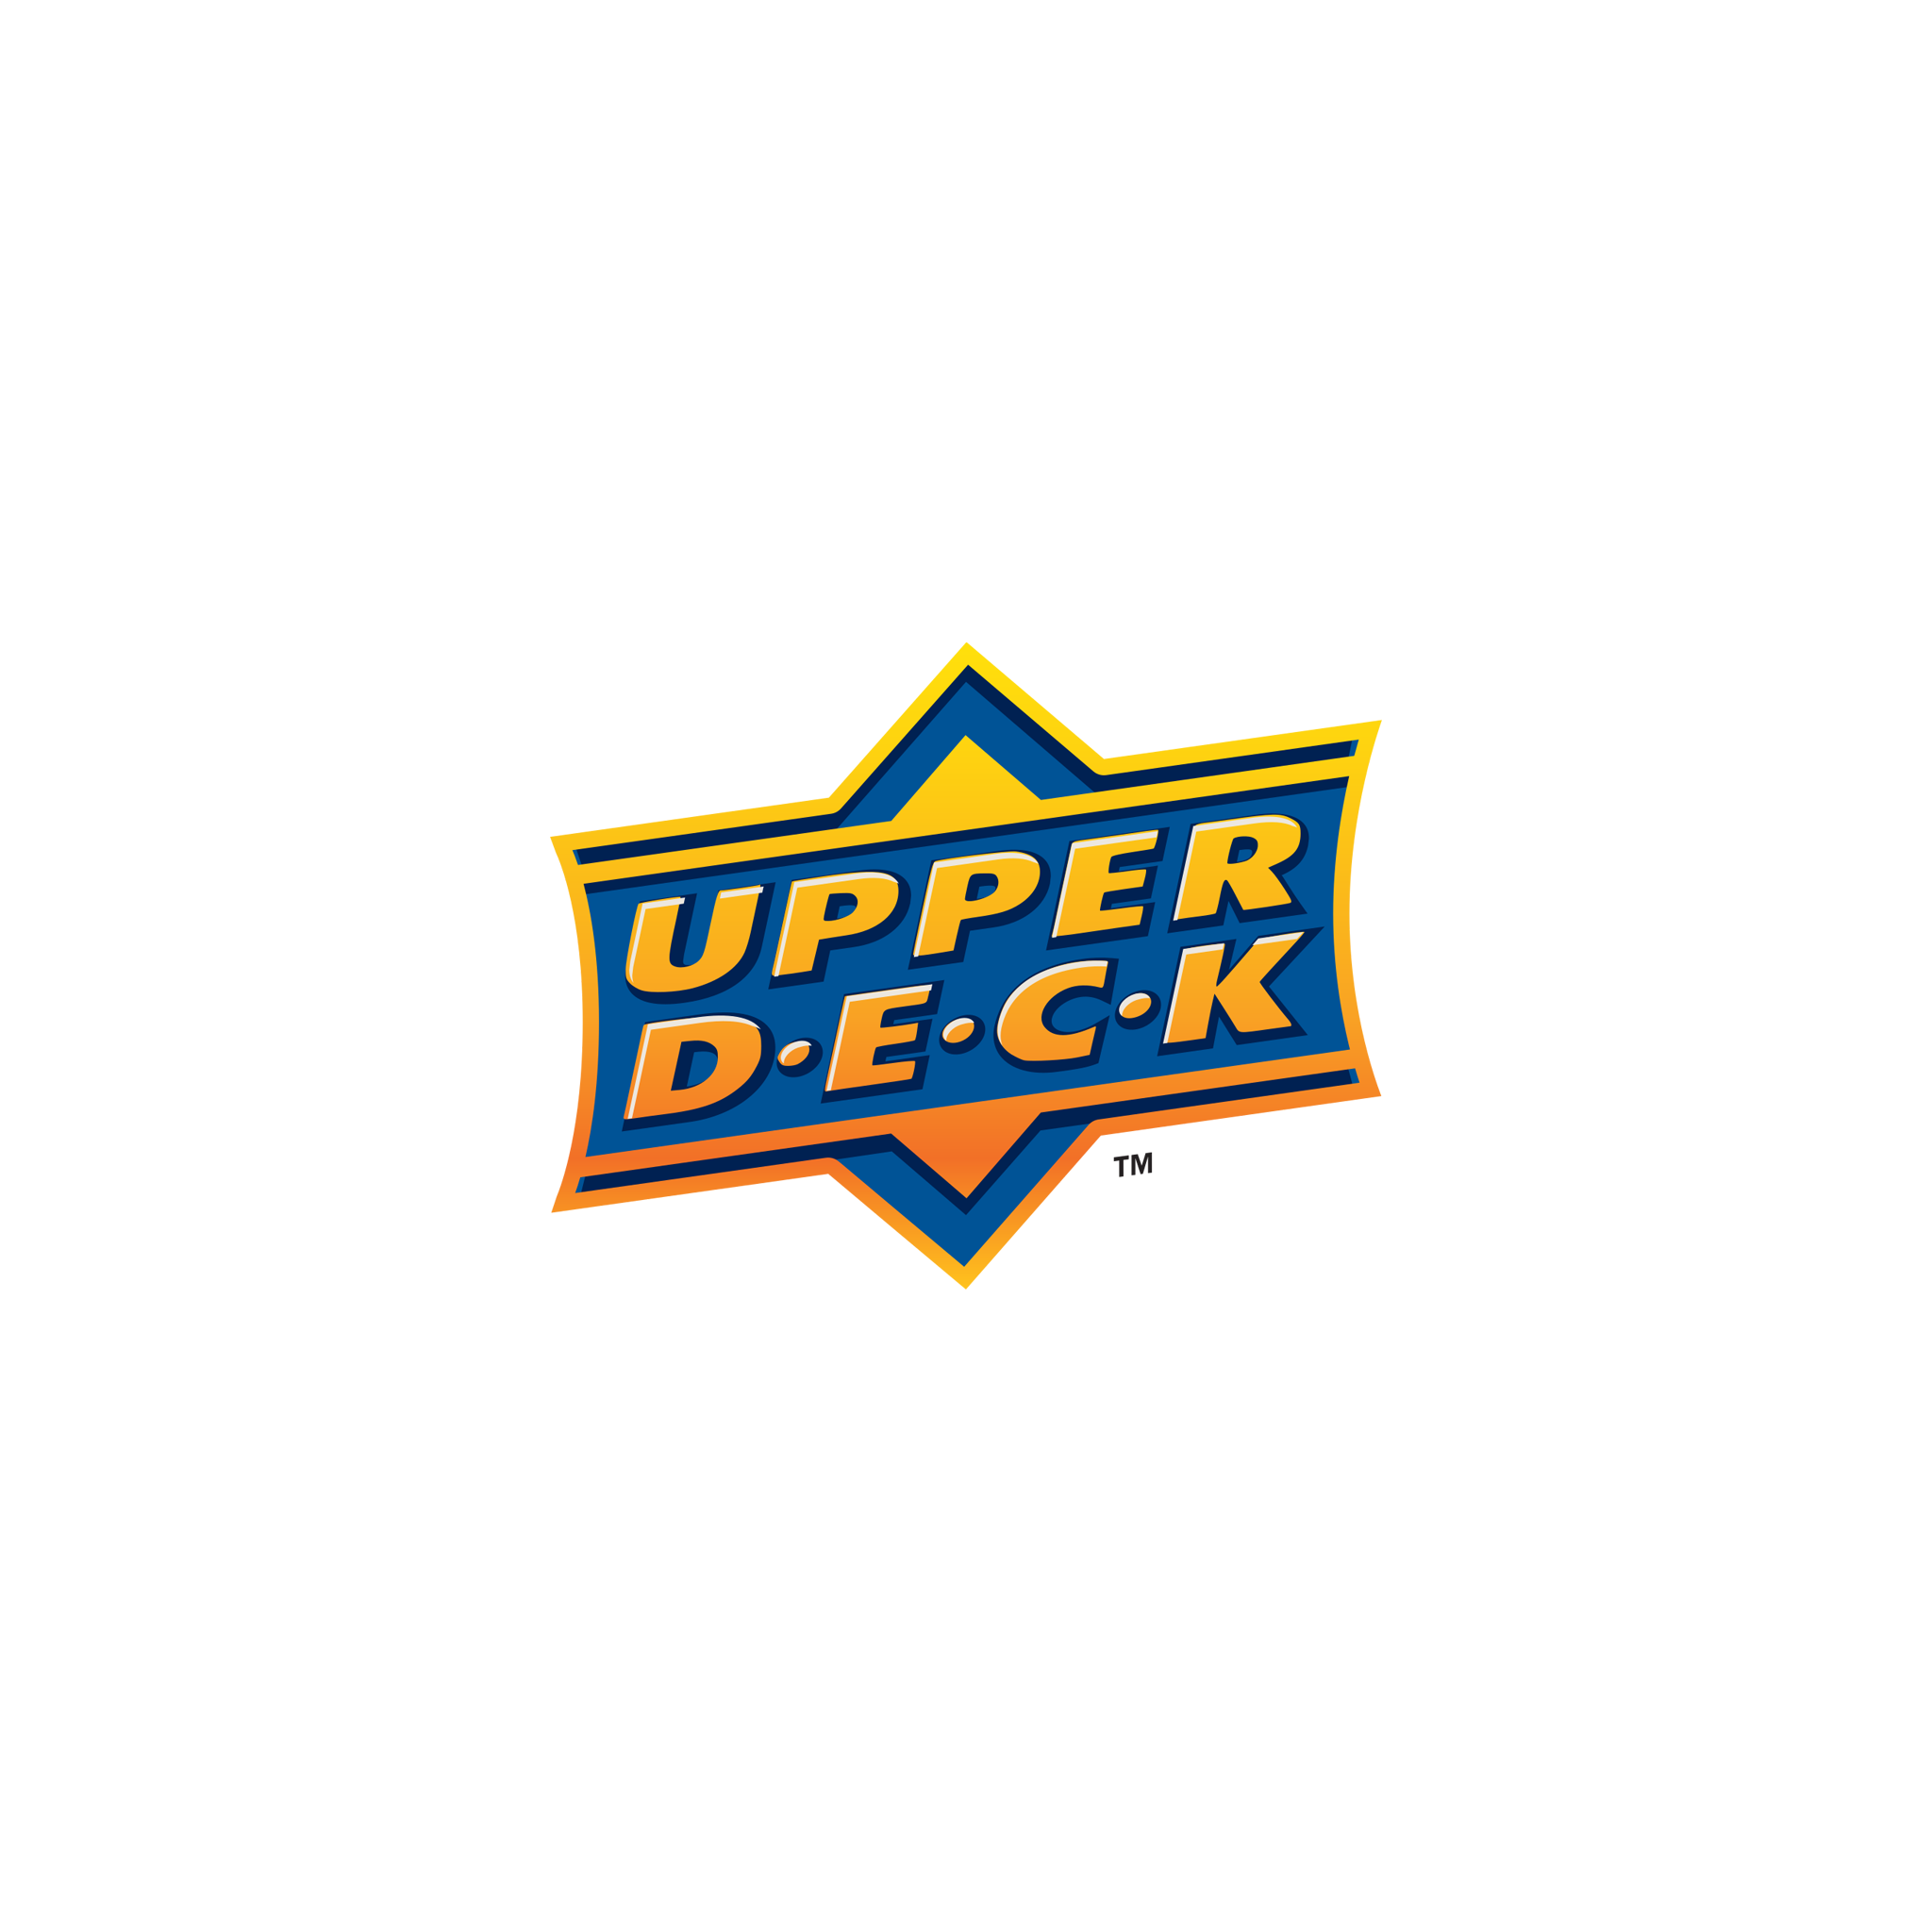 UPPER DECK – MOMENT Ltd.